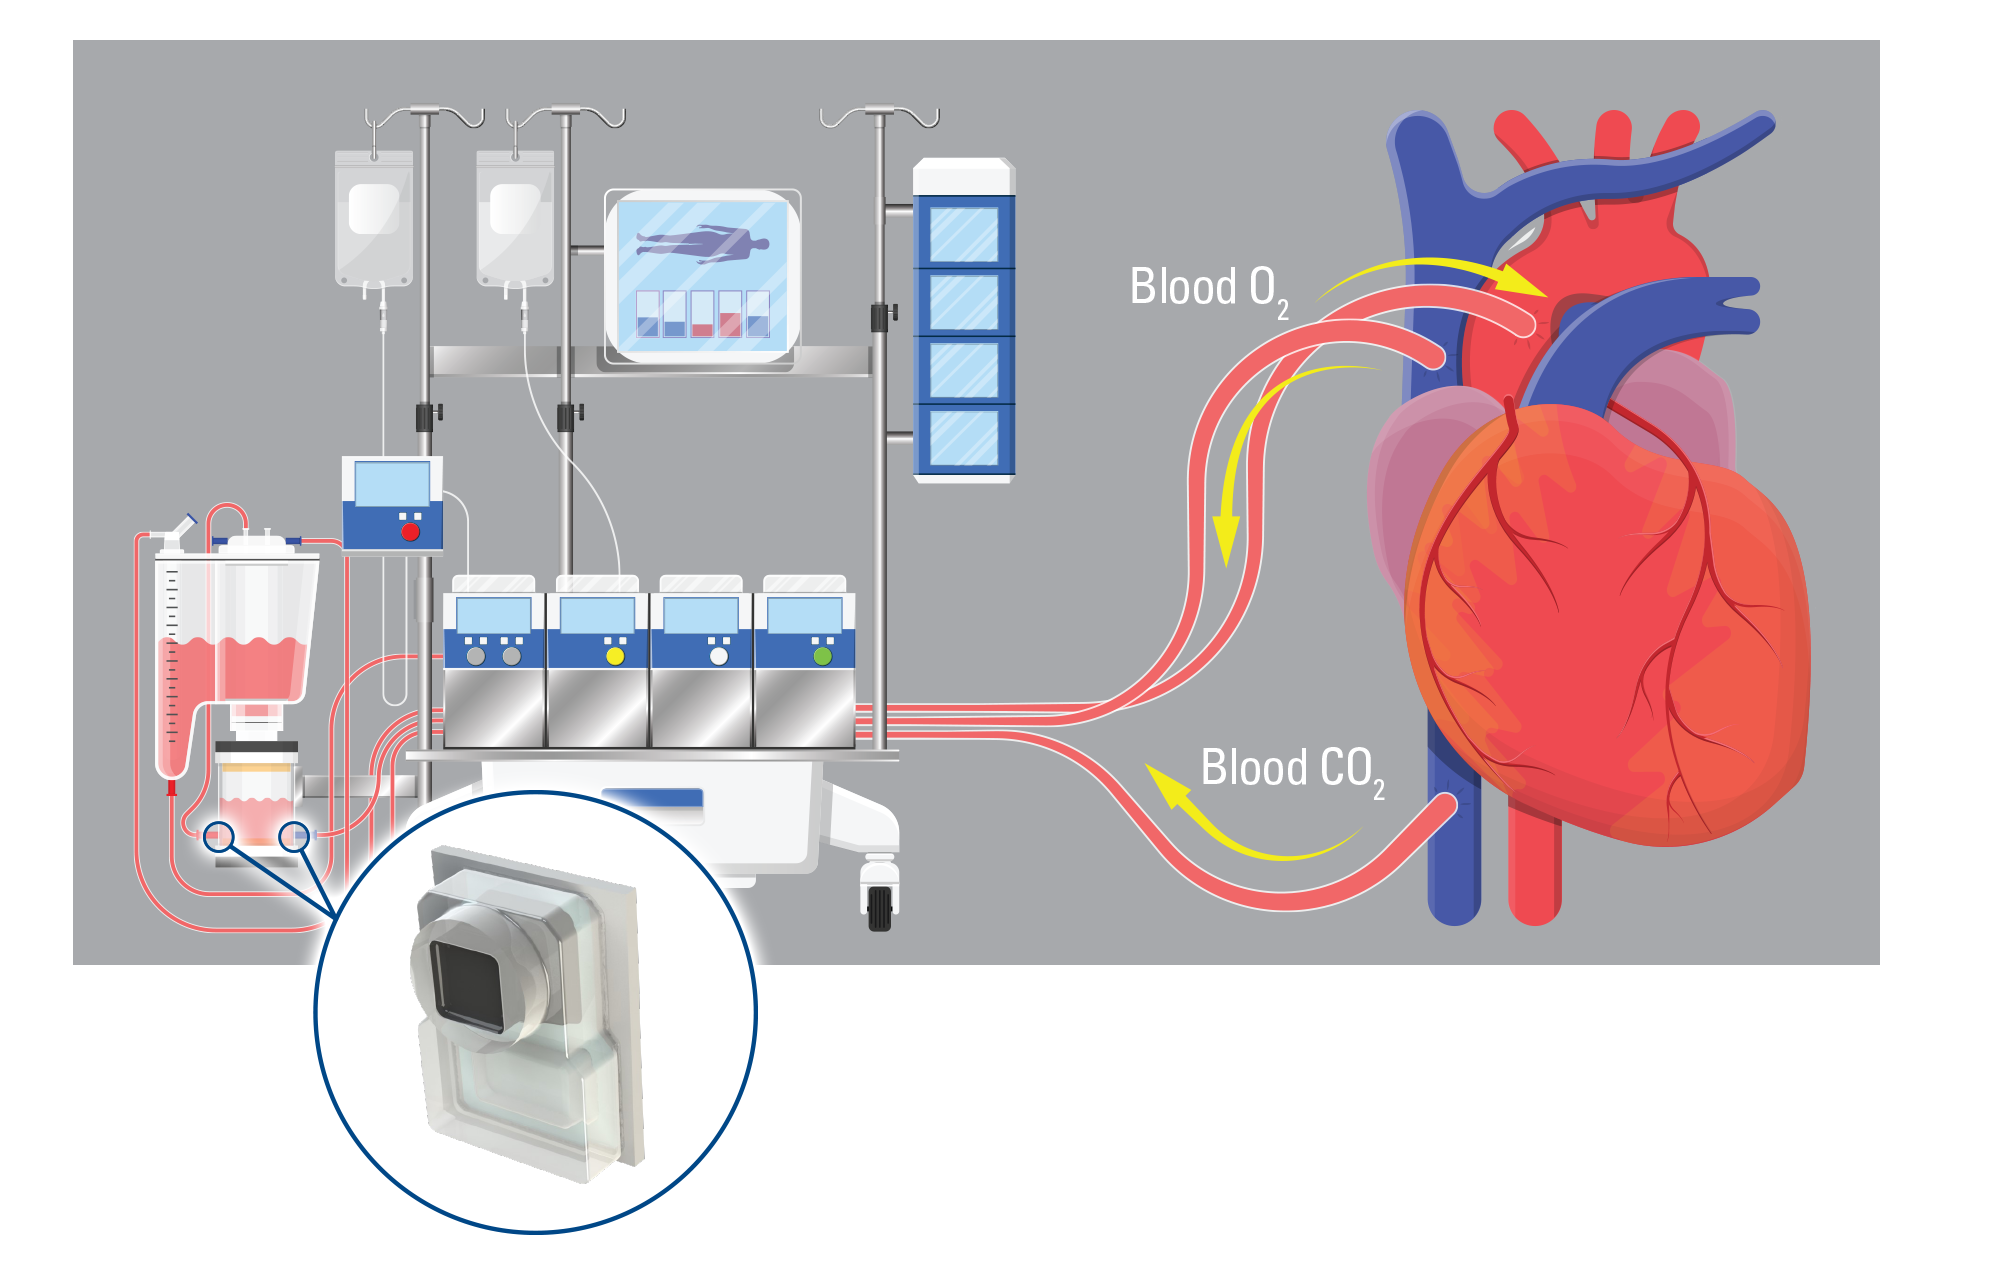 Benefits of Ambulatory Blood Pressure Monitoring